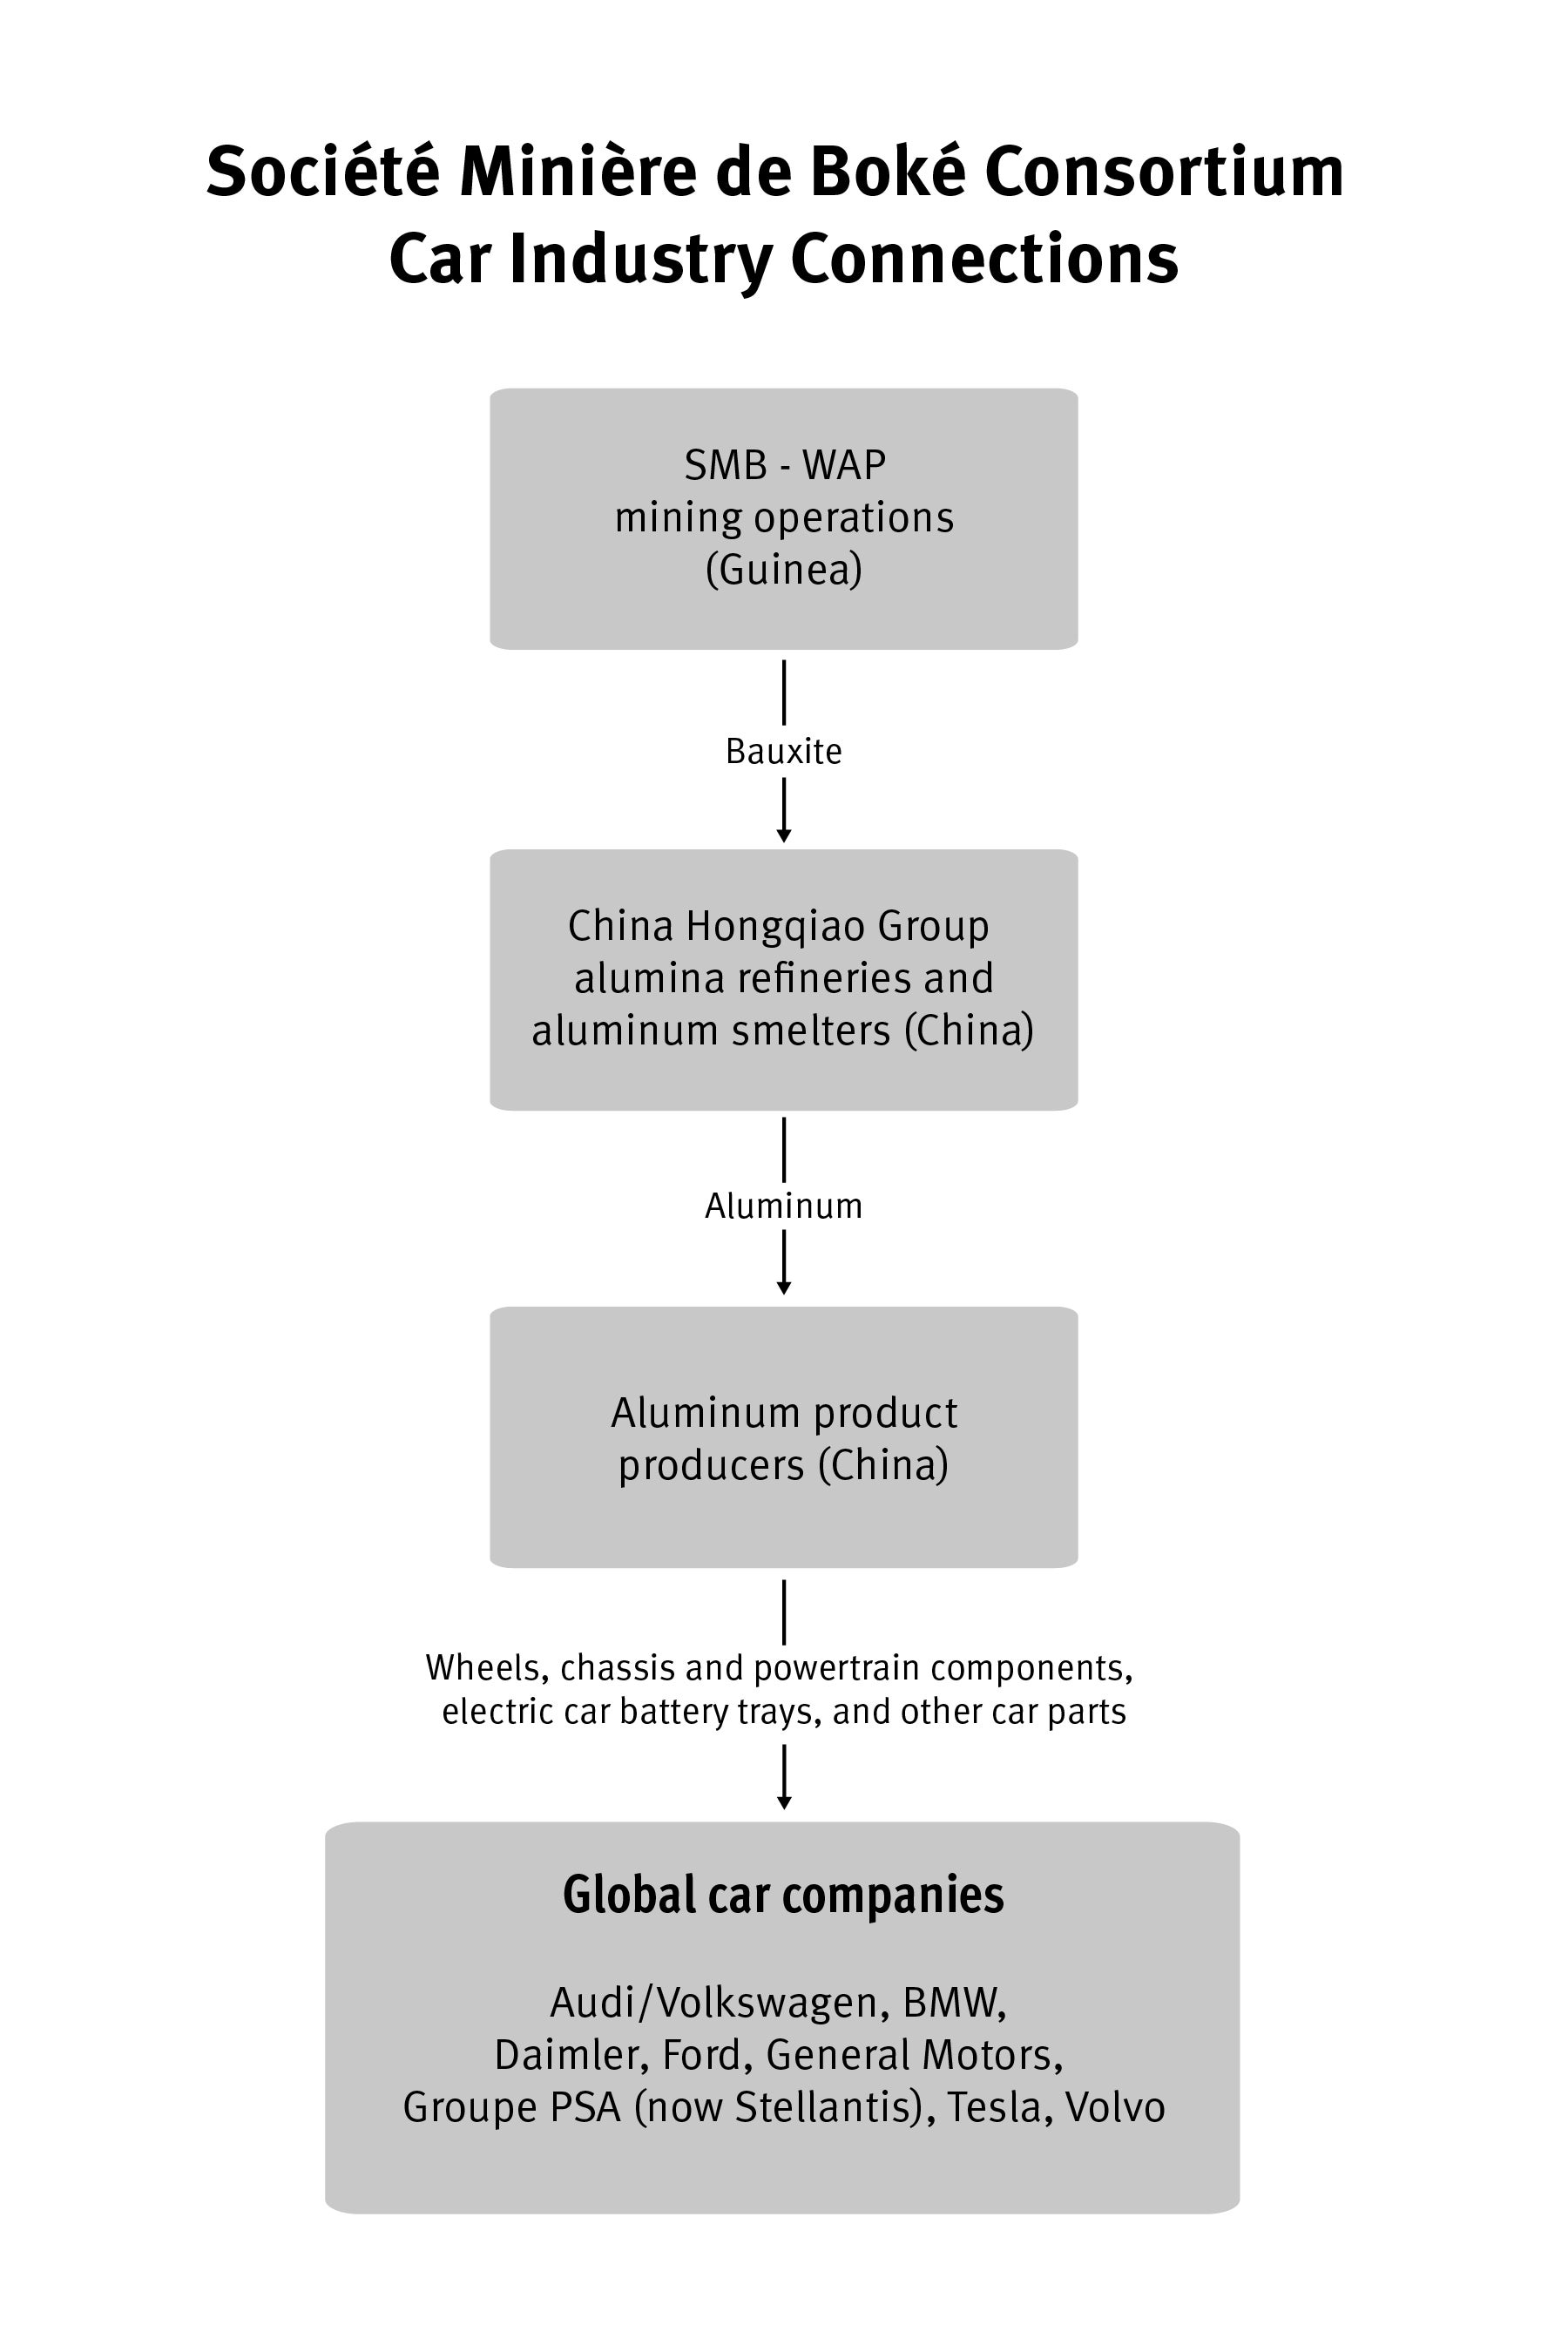 A flow chart detailing the supply chain of La Société Minière de Boké 